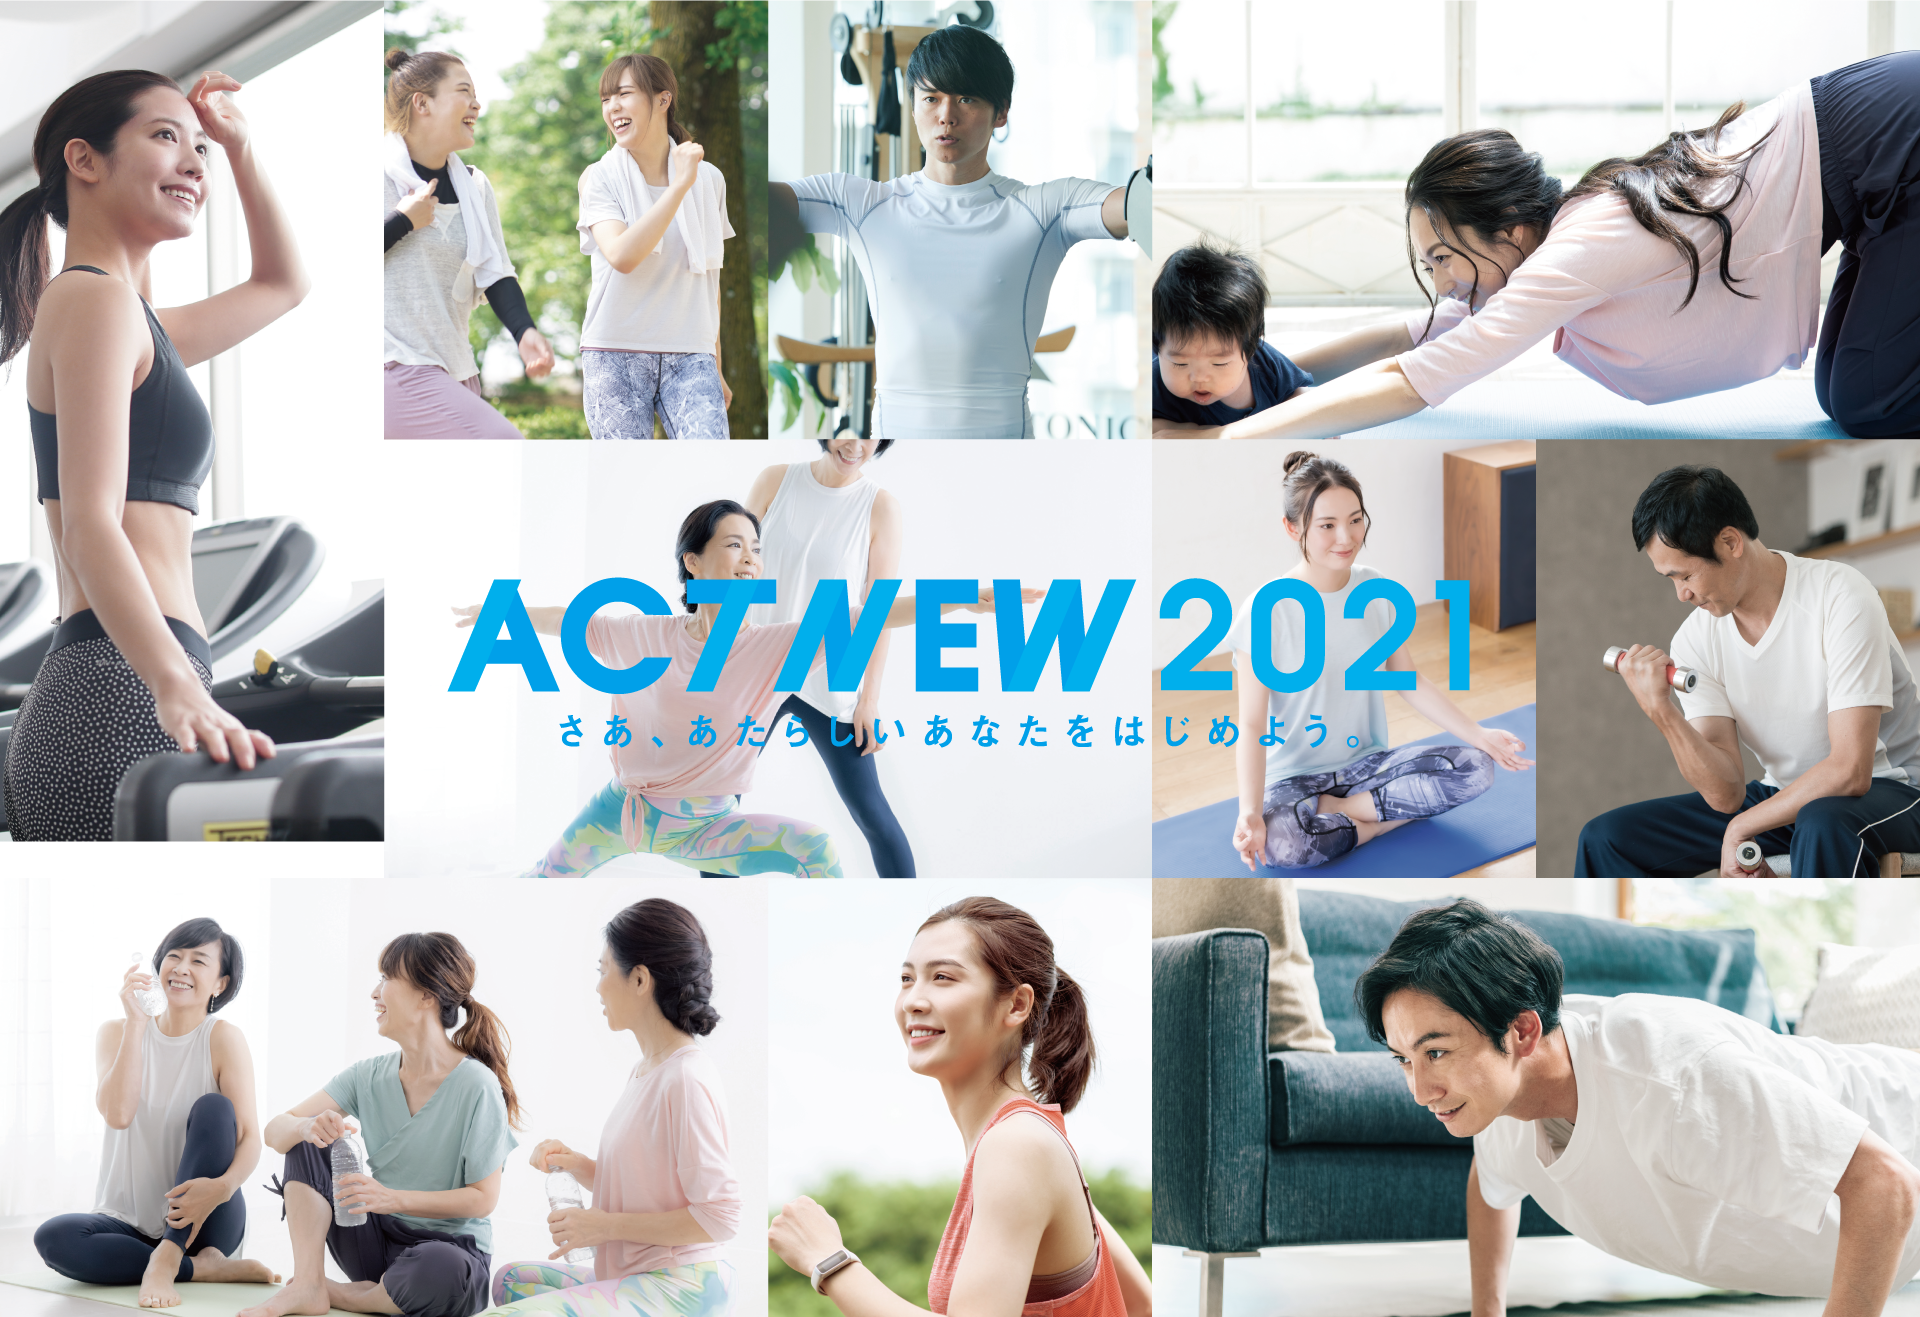 ACT NEW 2021 さあ、あたらしいあなたをはじめよう。